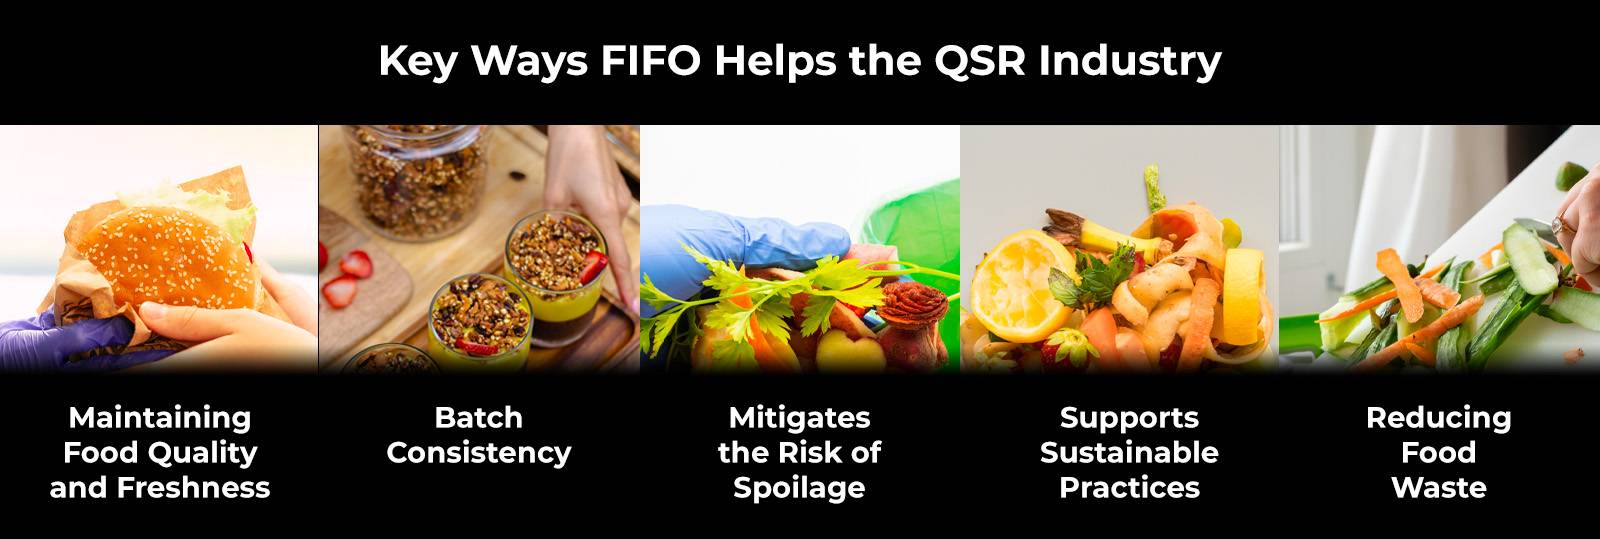 FIFO는 라스트 마일 배송을 통해 QSR 업계에 어떻게 도움이 됩니까?